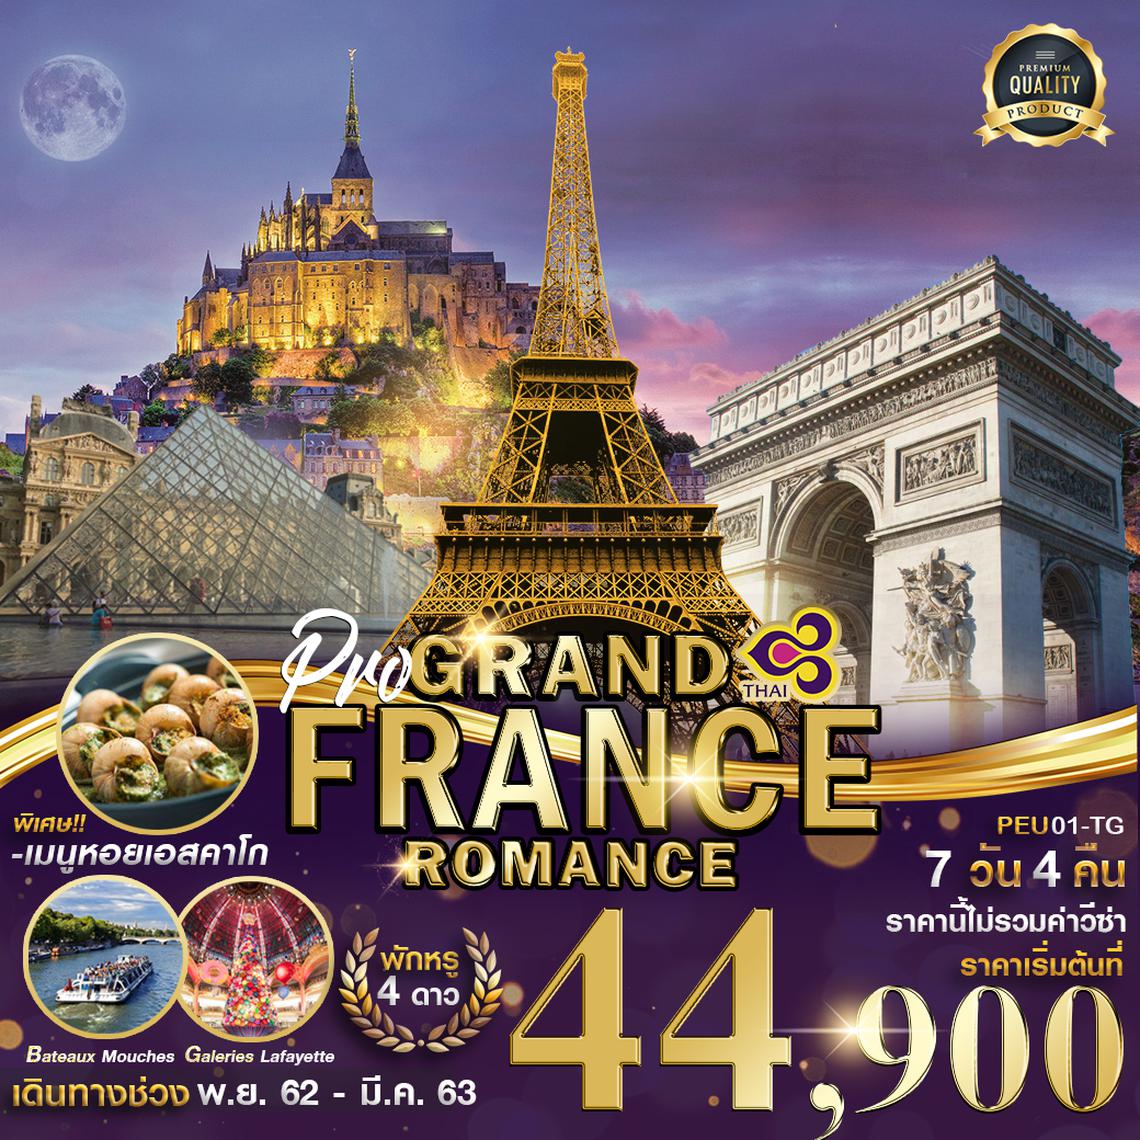 PEU01-TG PRO GRAND FRANCE ROMANCE 7D4N